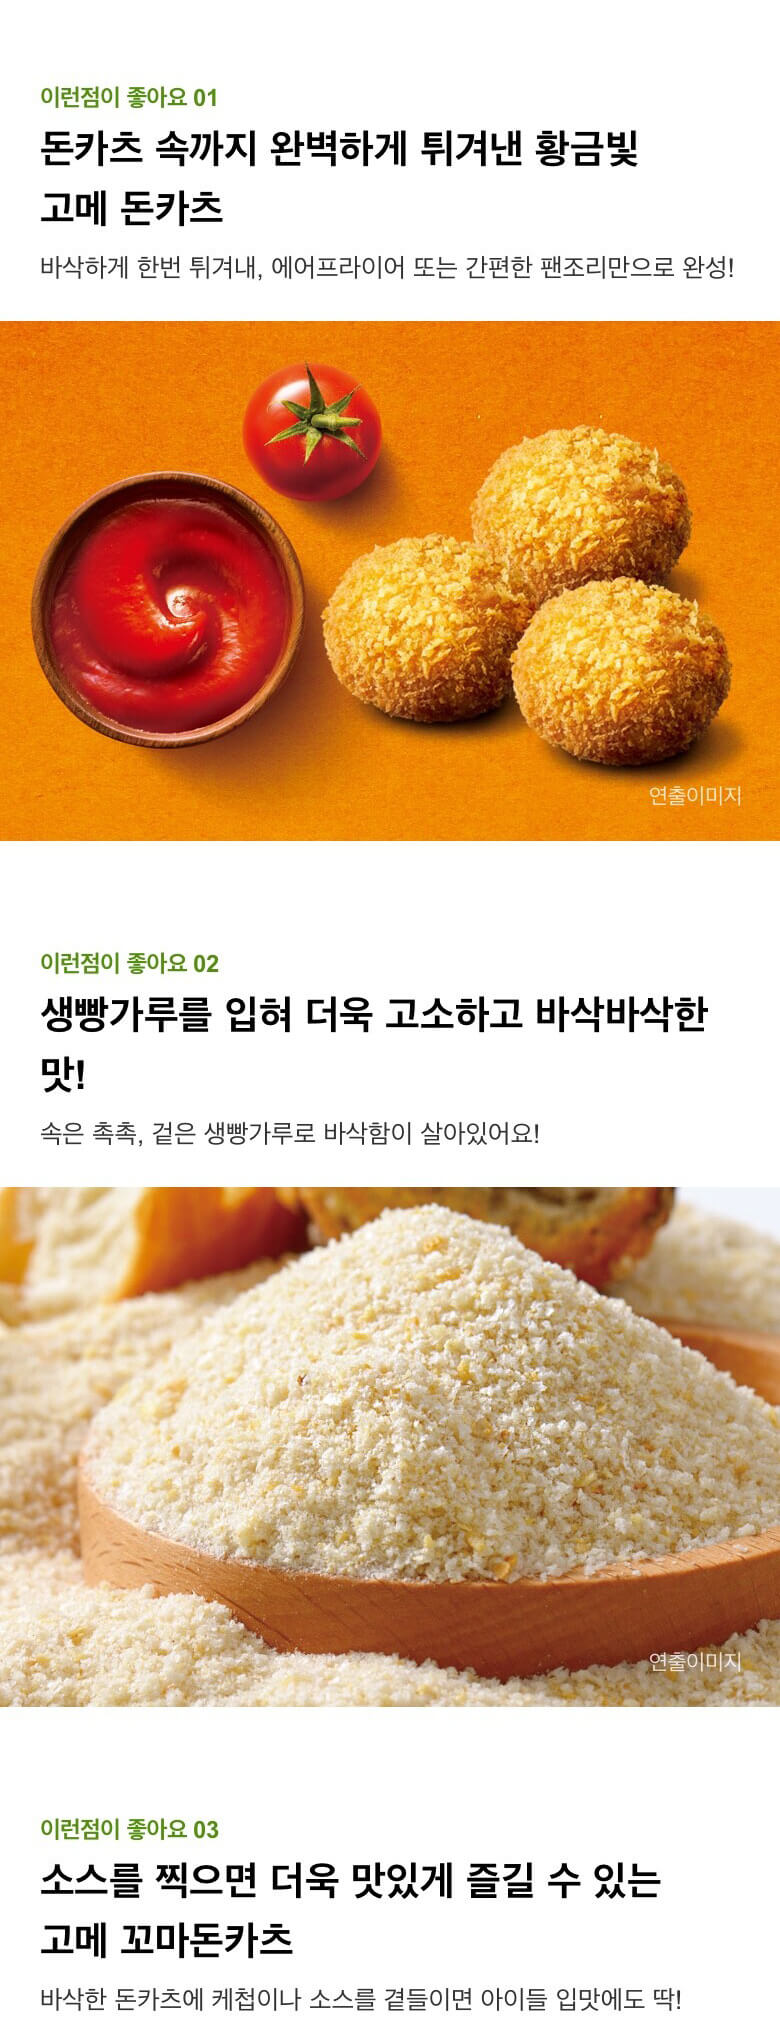 韓國食品-[CJ] 고메꼬마돈카츠 450g